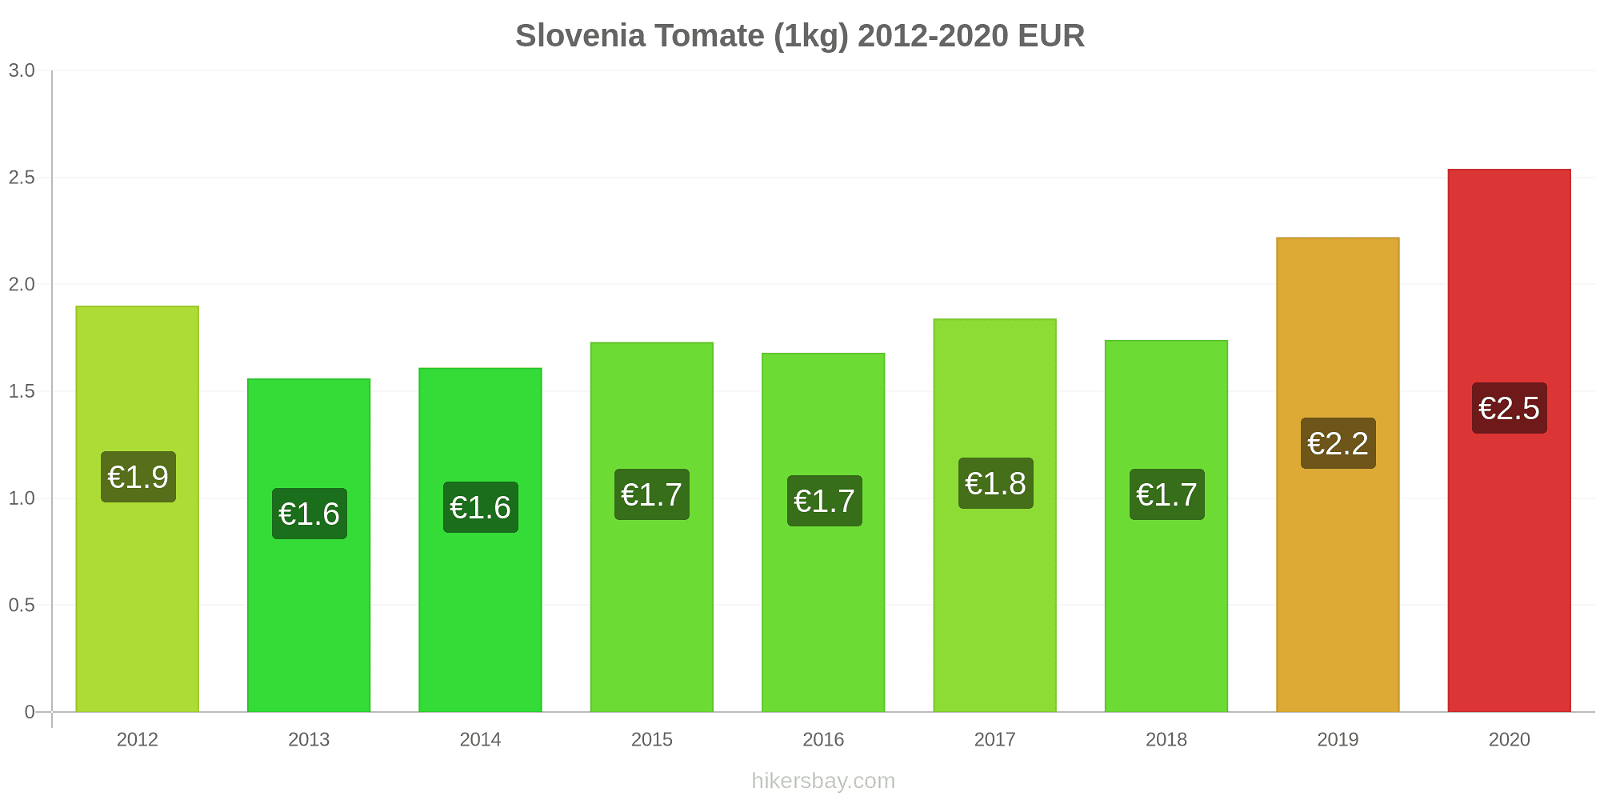 Slovenia modificări de preț Tomate (1kg) hikersbay.com